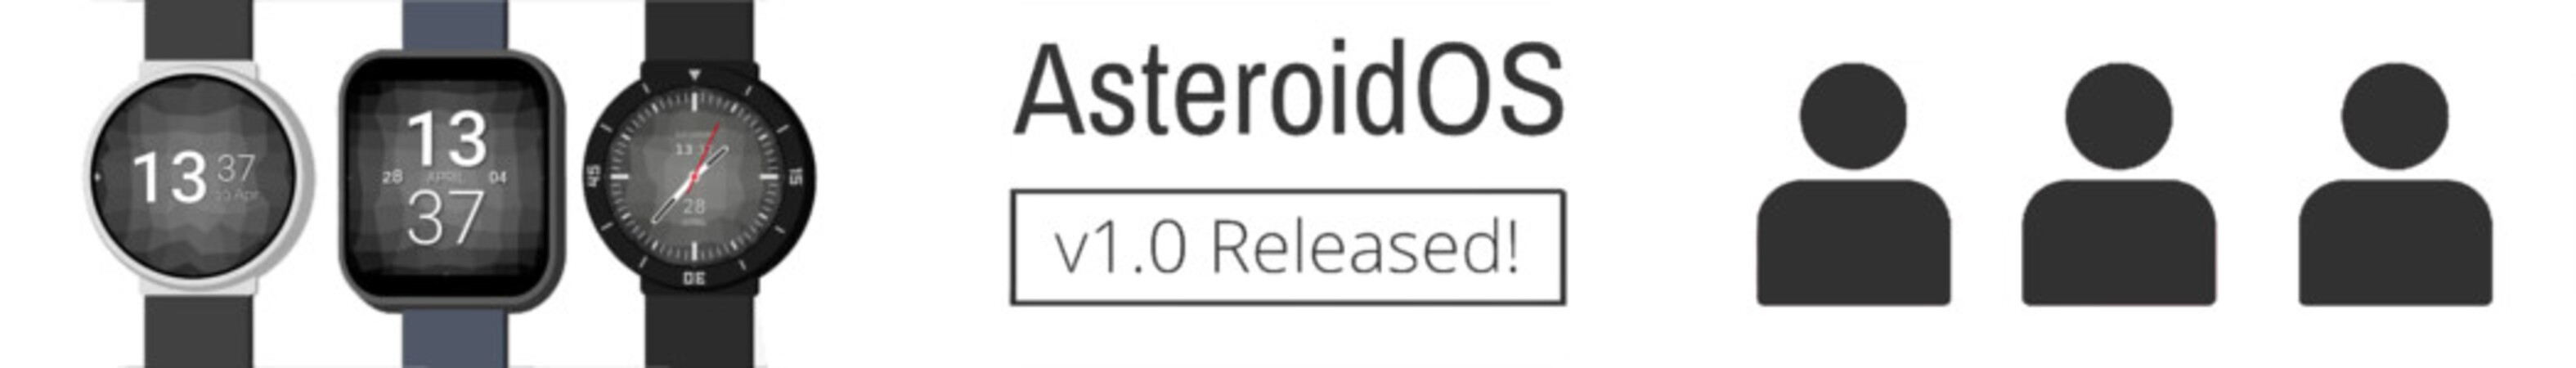 AsteroidOS, sistemul de operare open-source pentru smartwatches alimentat de sistemul de operare Google Wear OS